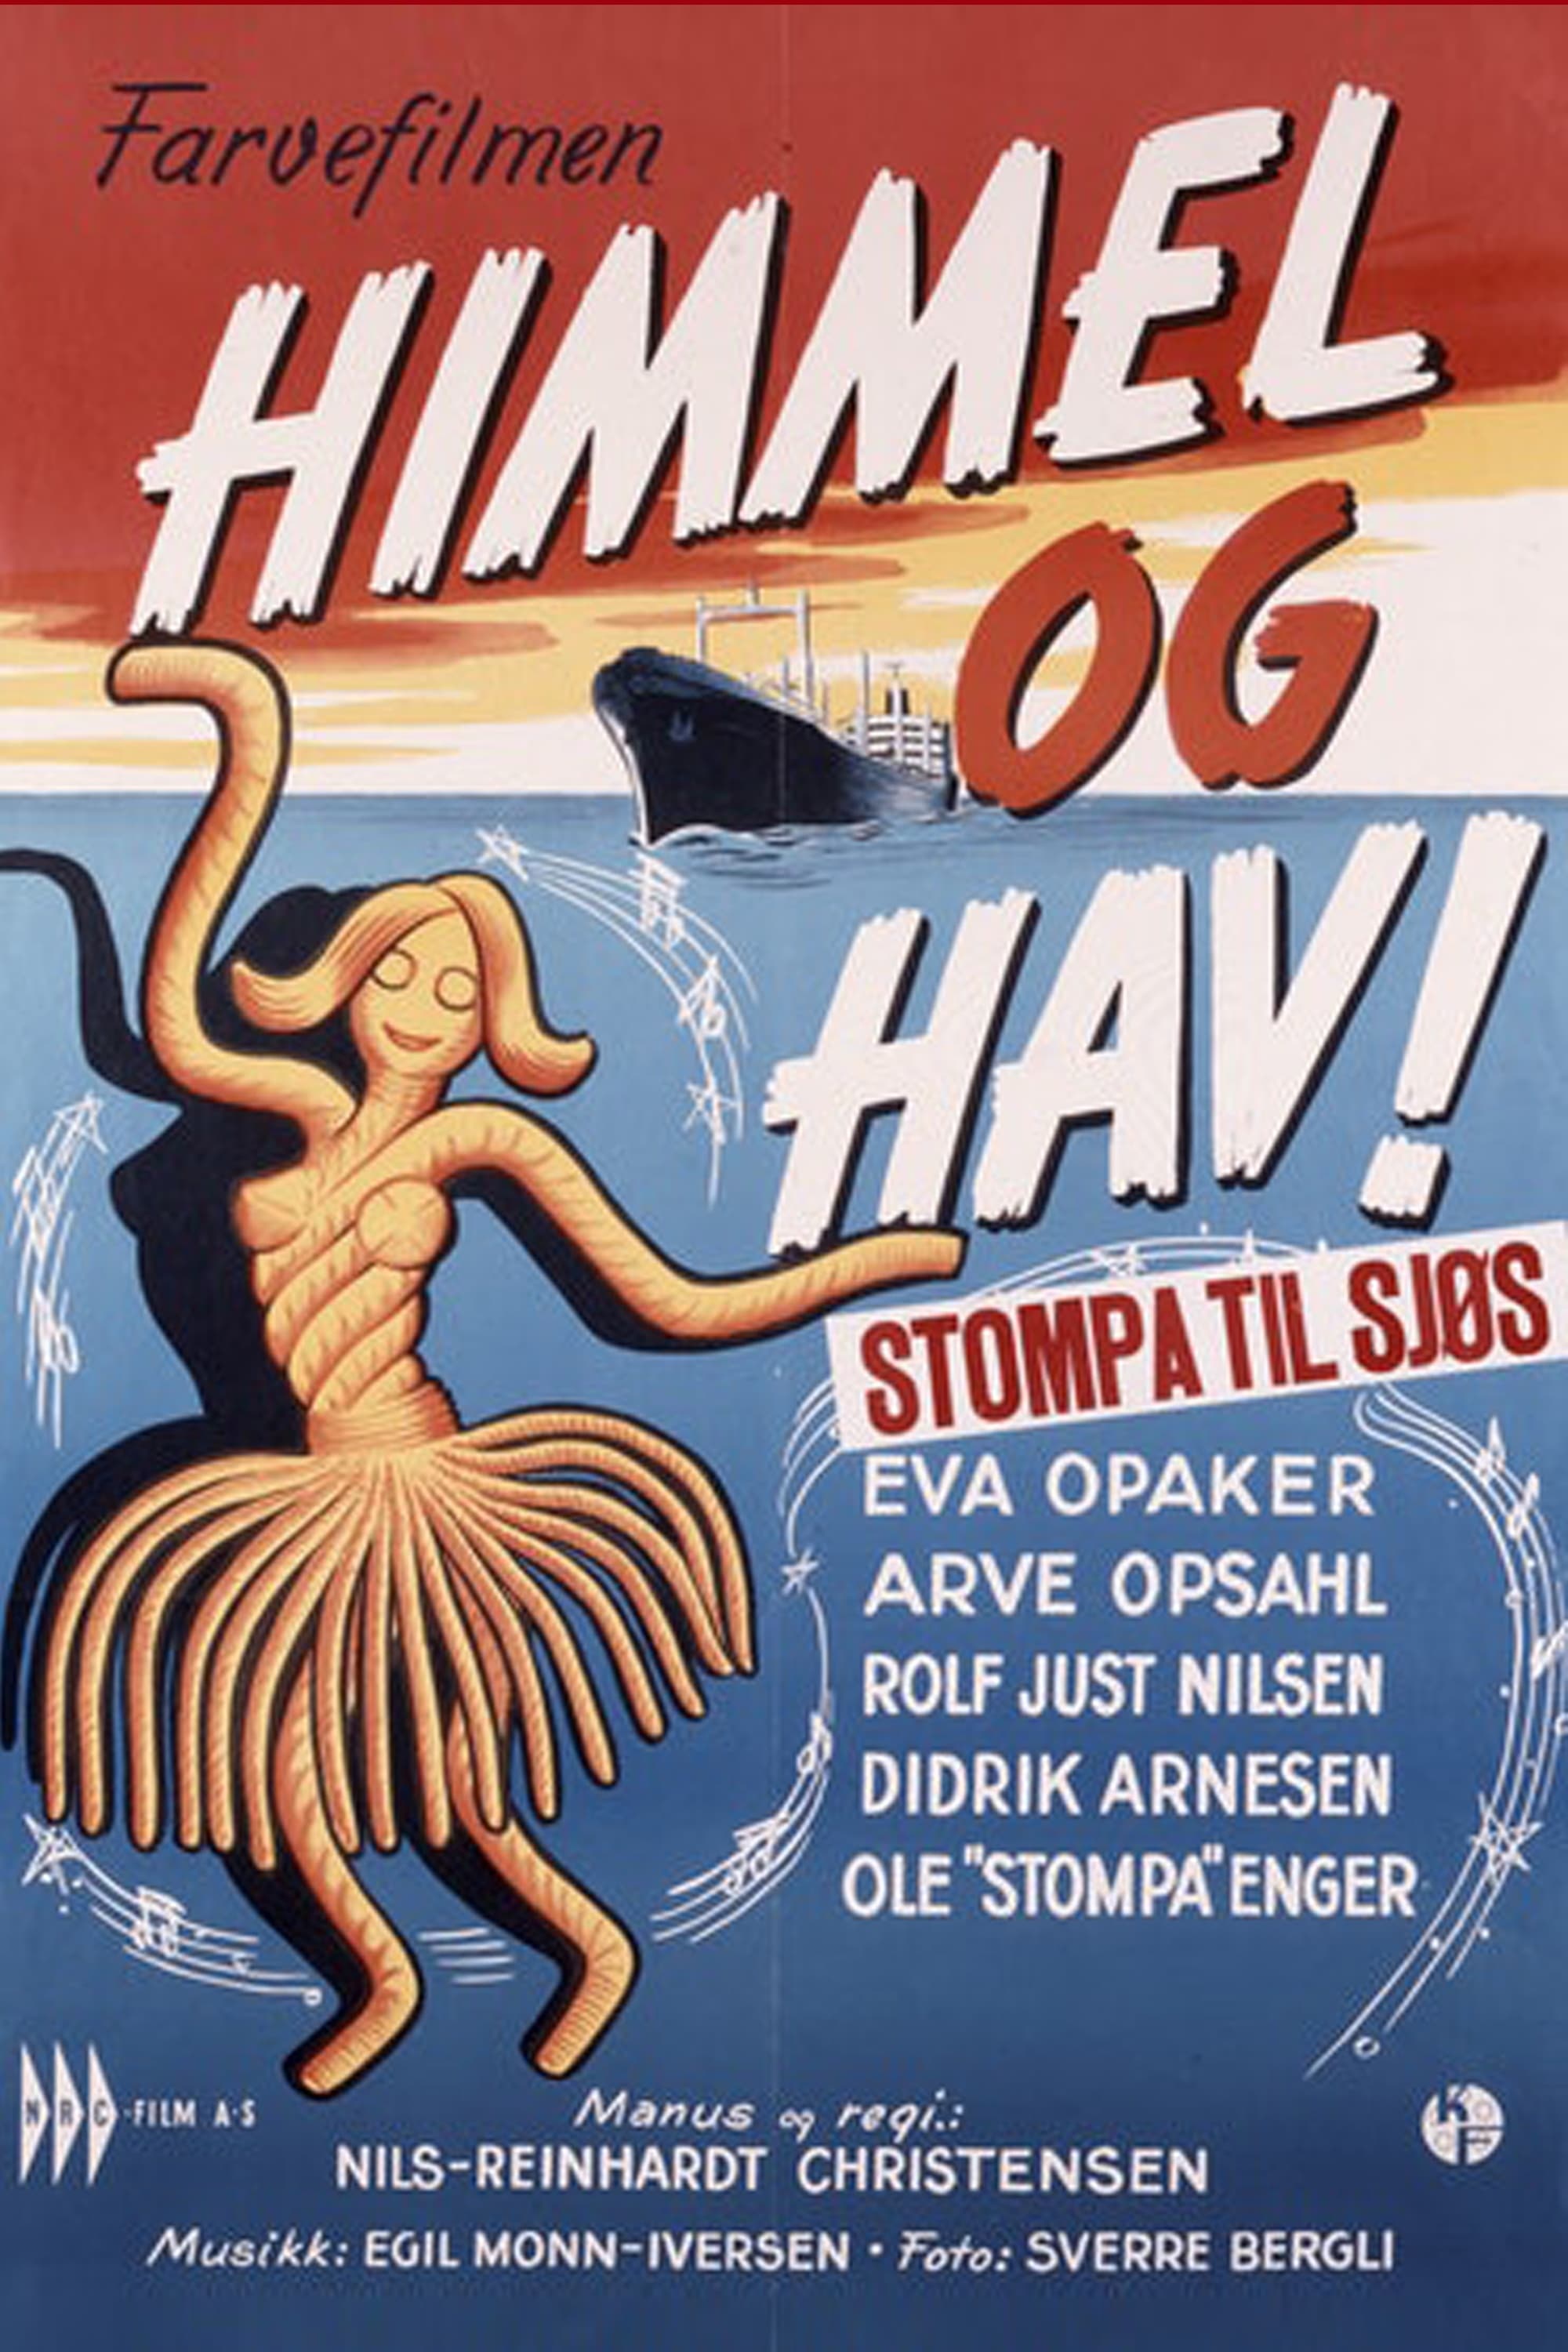 Stompa til Sjøs! (1967)